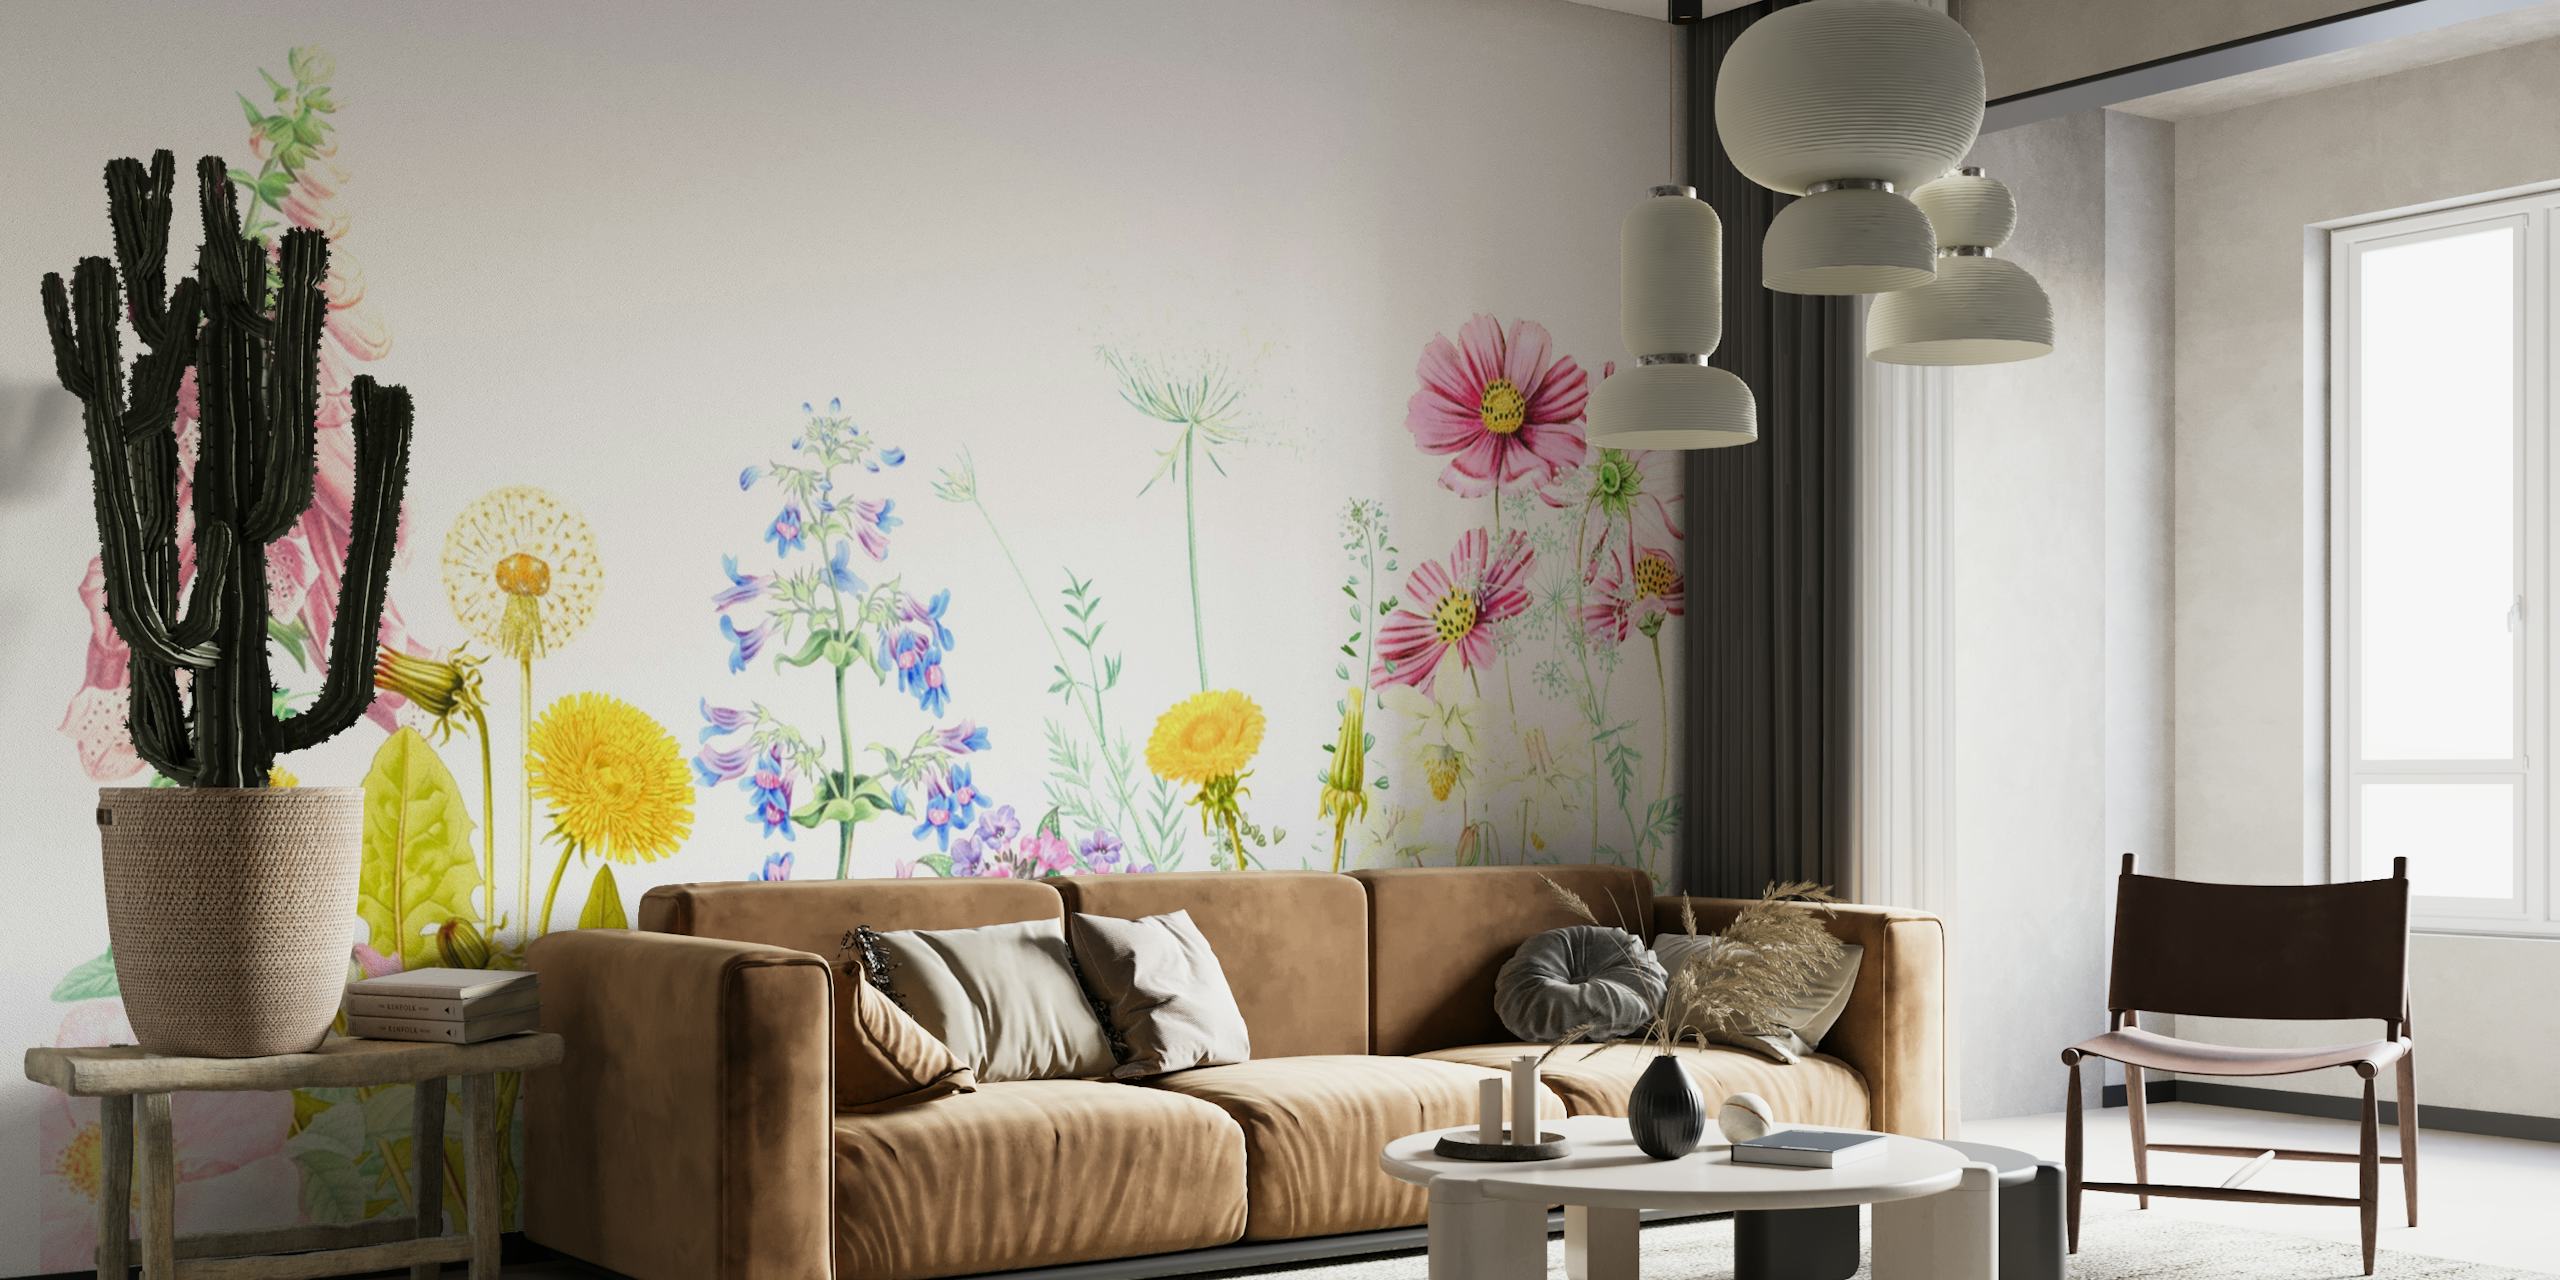 Värikäs seinämaalaus kevätkukkien niityltä erilaisilla kukilla